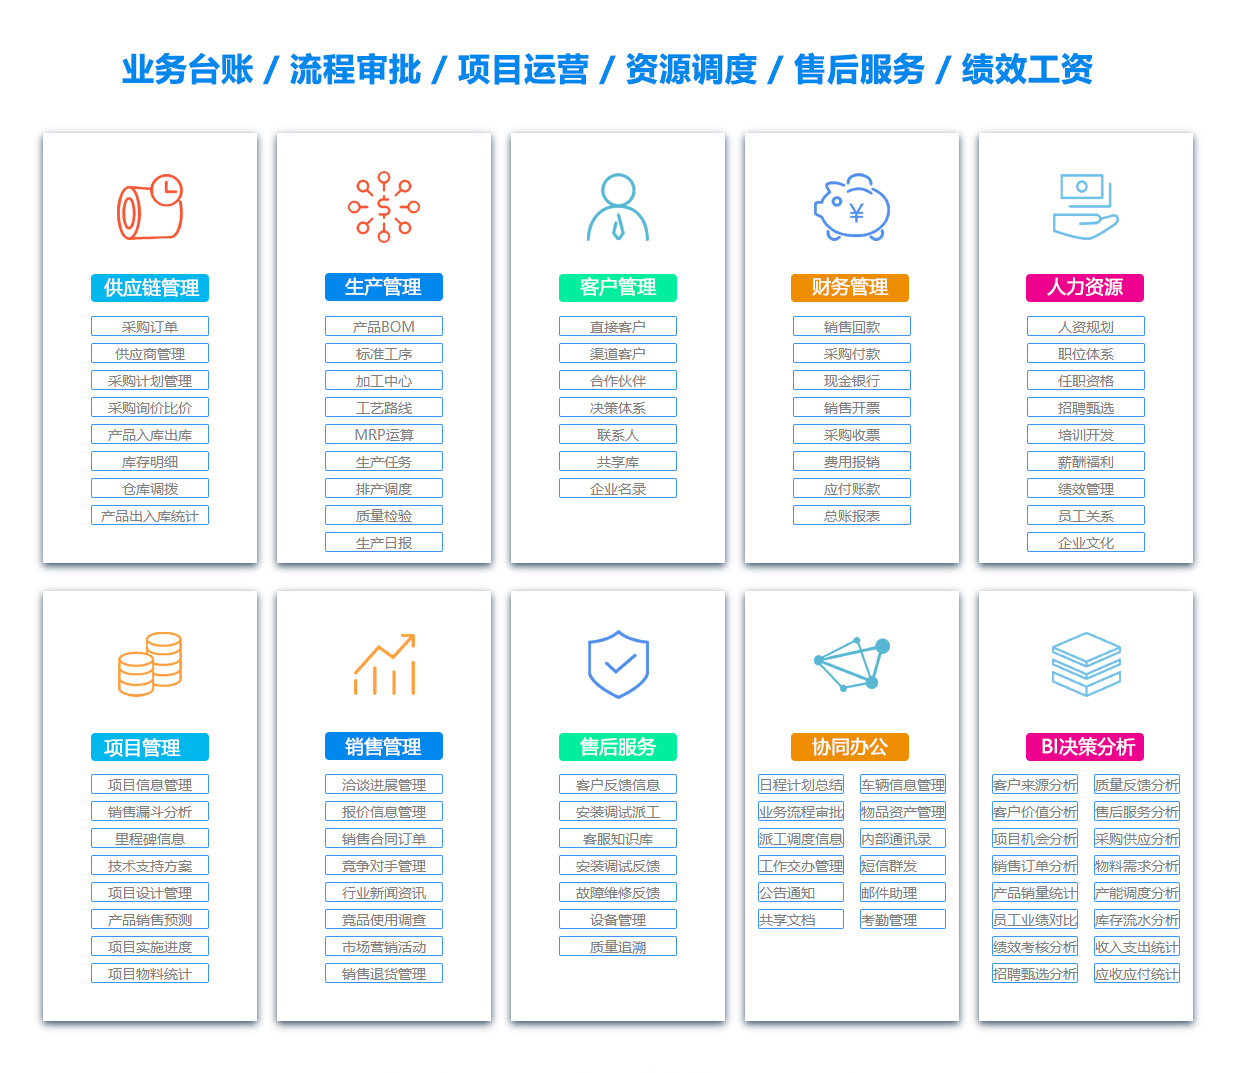 南京SCM:供应链管理系统